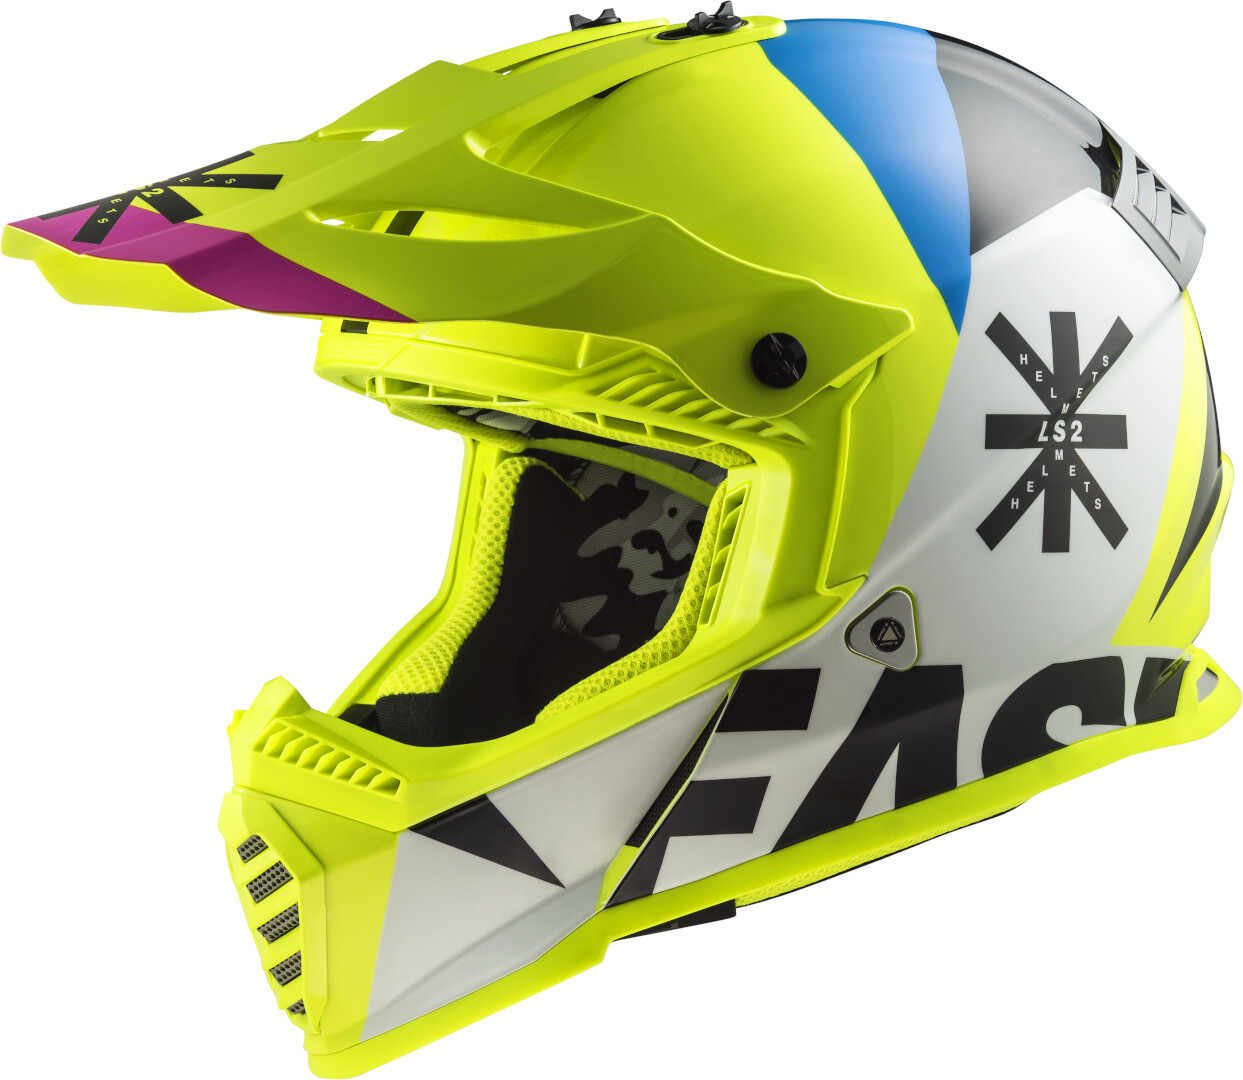 Шлем LS2 MX437 Fast Heavy Evo для мотокросса, бело-желто-синий